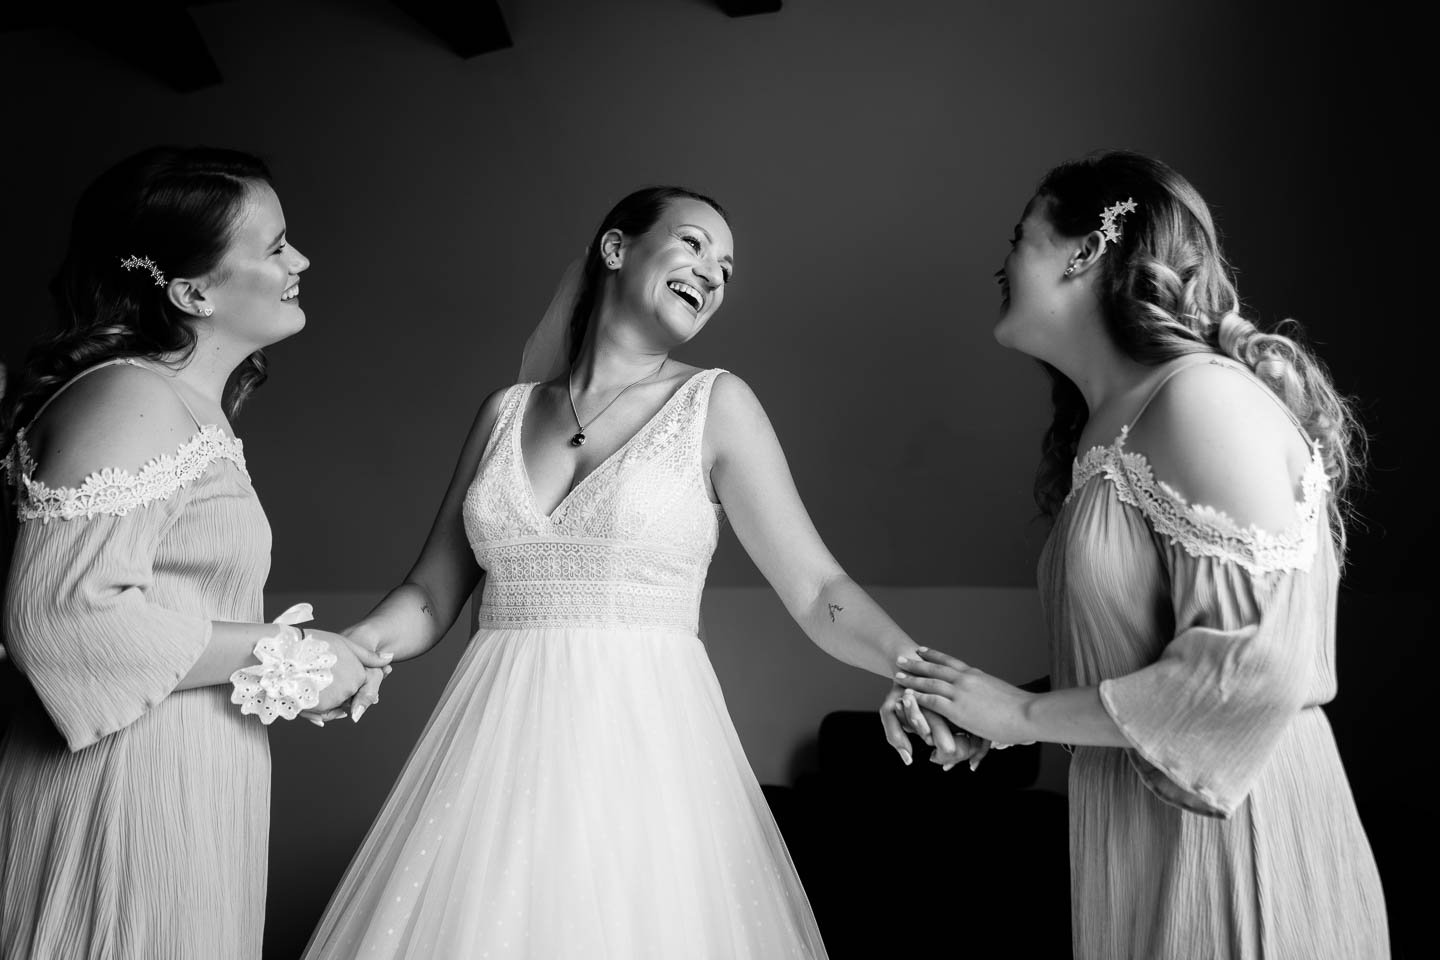 Esküvő fotó sorozat, menyasszonyi fotózás